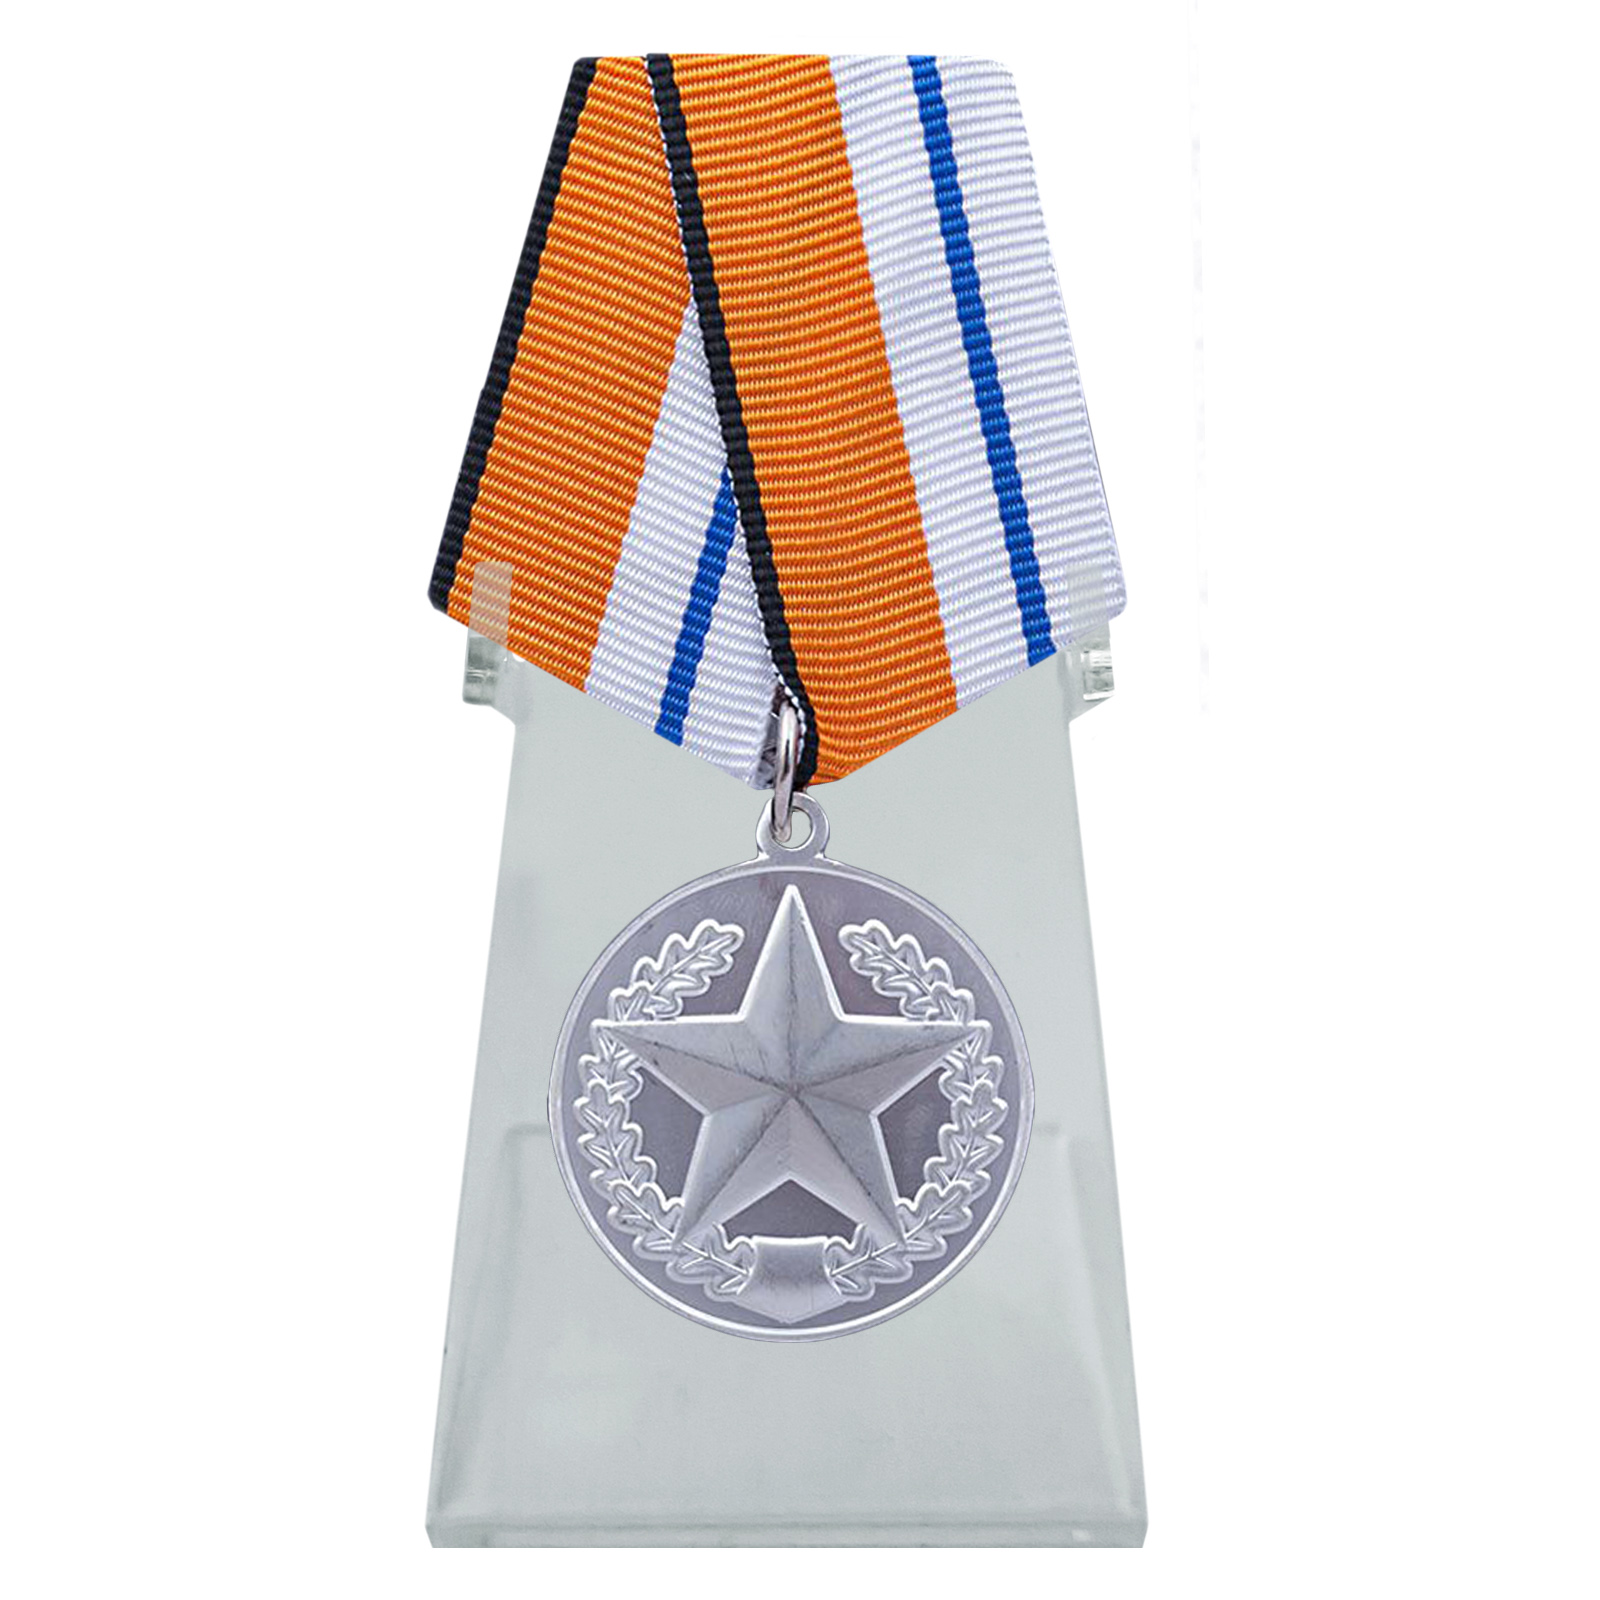 Медаль МинОбороны "За отличие в соревнованиях" на подставке